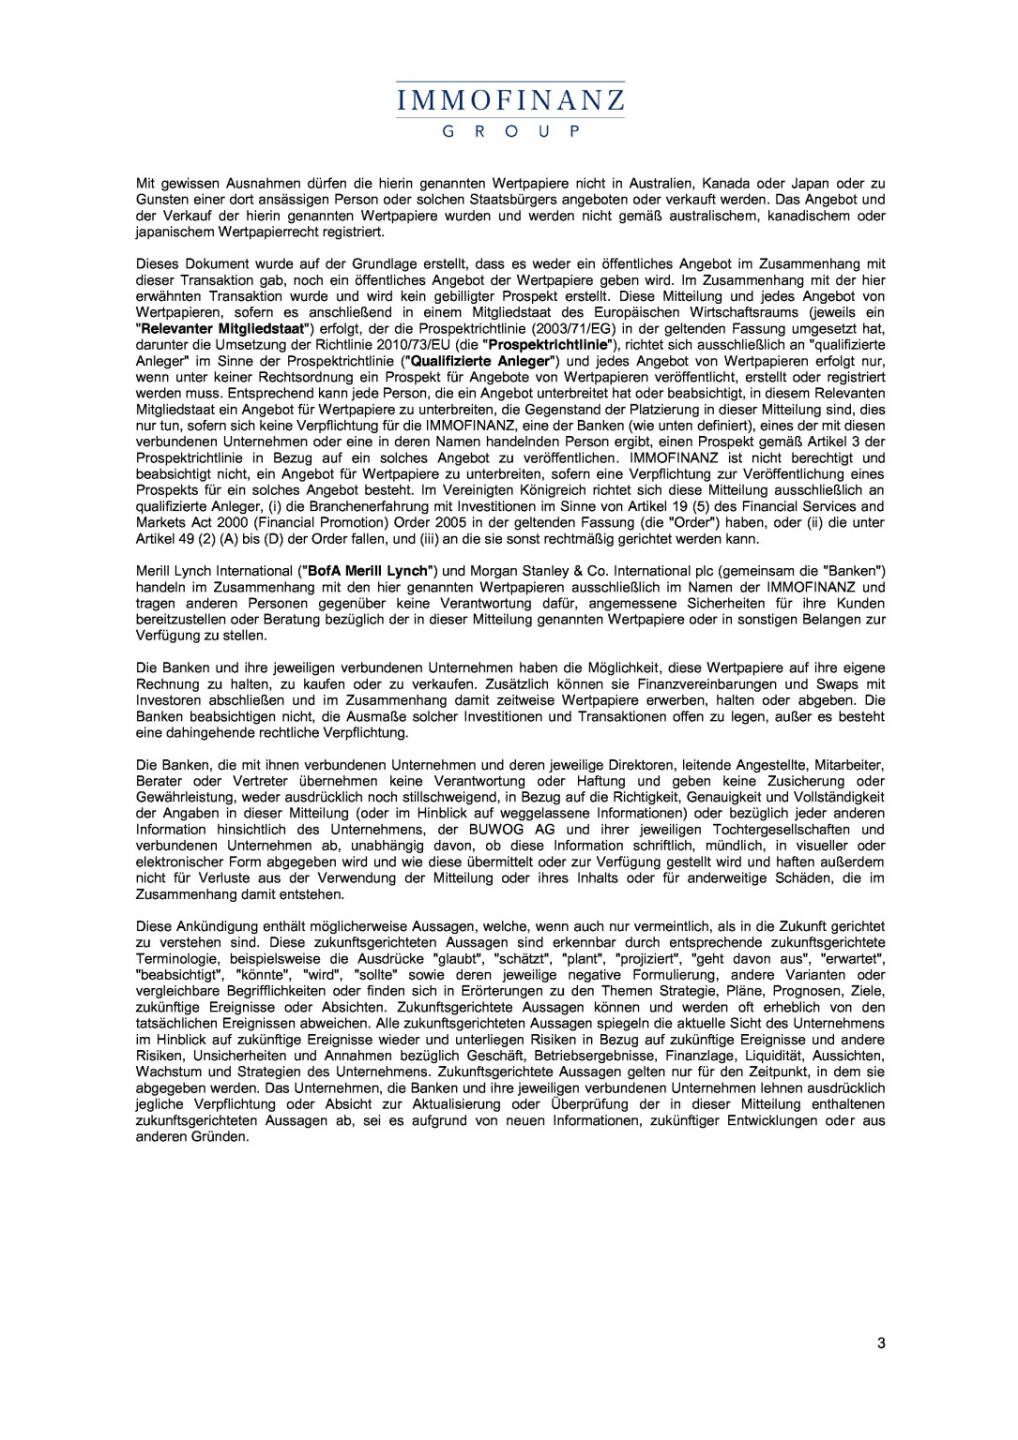 Tausch Immofinanz Anleihe gegen Buwog Aktie, Seite 3/4, komplettes Dokument unter http://boerse-social.com/static/uploads/file_337_tausch_immofinanz_anleihe_gegen_buwog_aktie.pdf